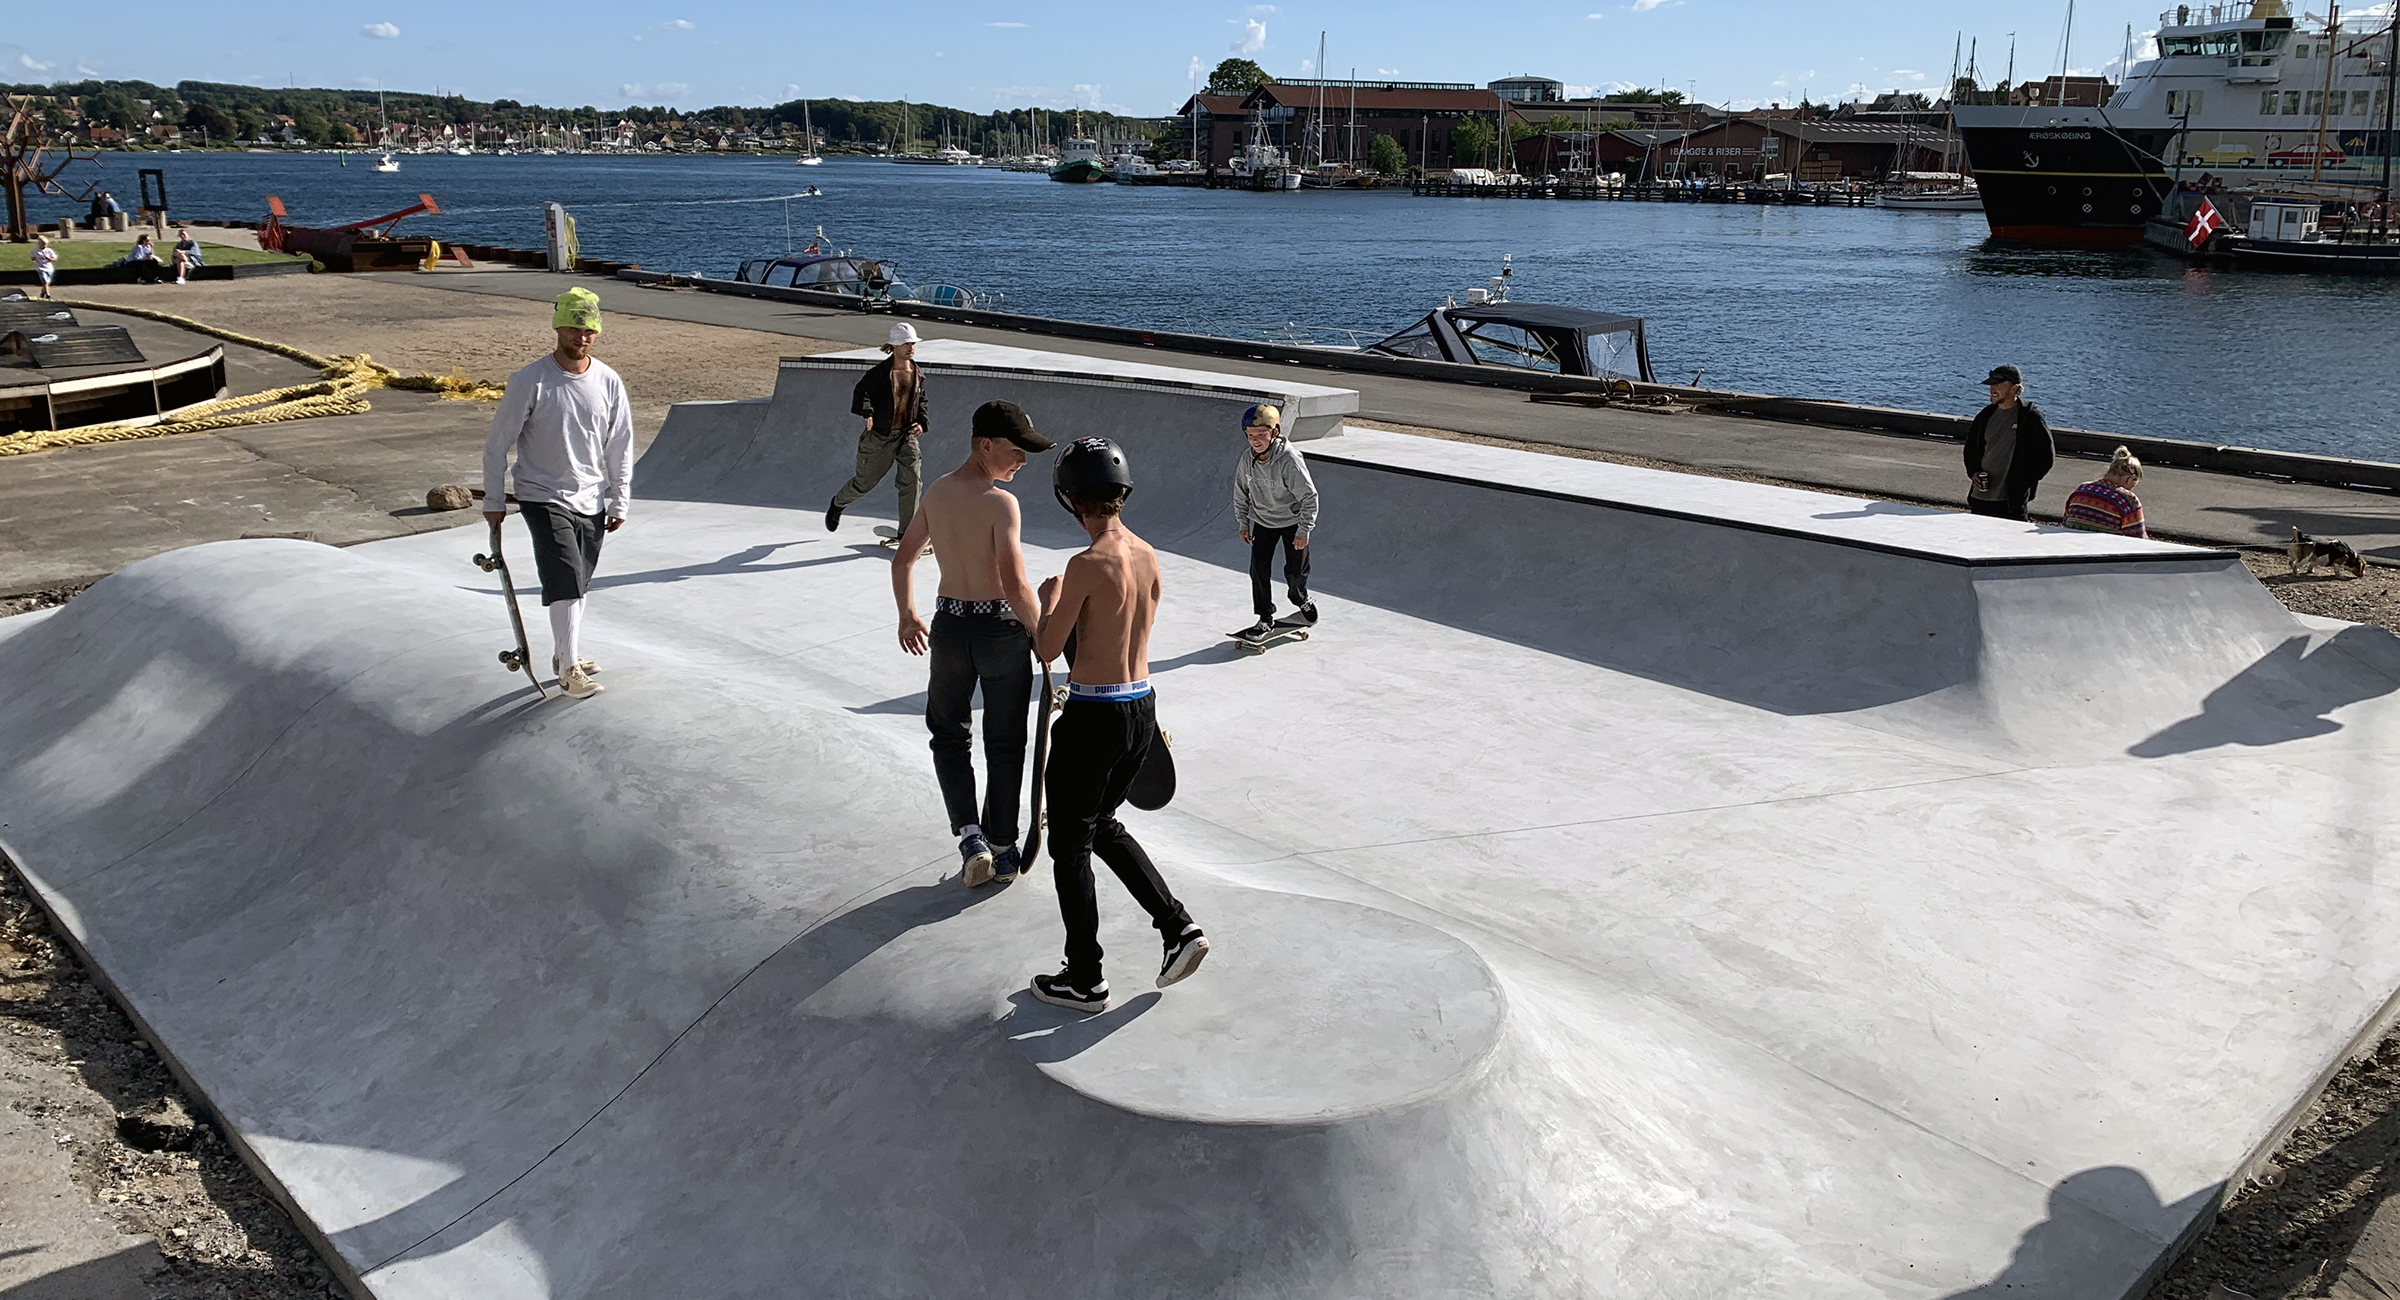 Her ses betonramper med skateboardere på. I baggrunden ses Svendborg havn